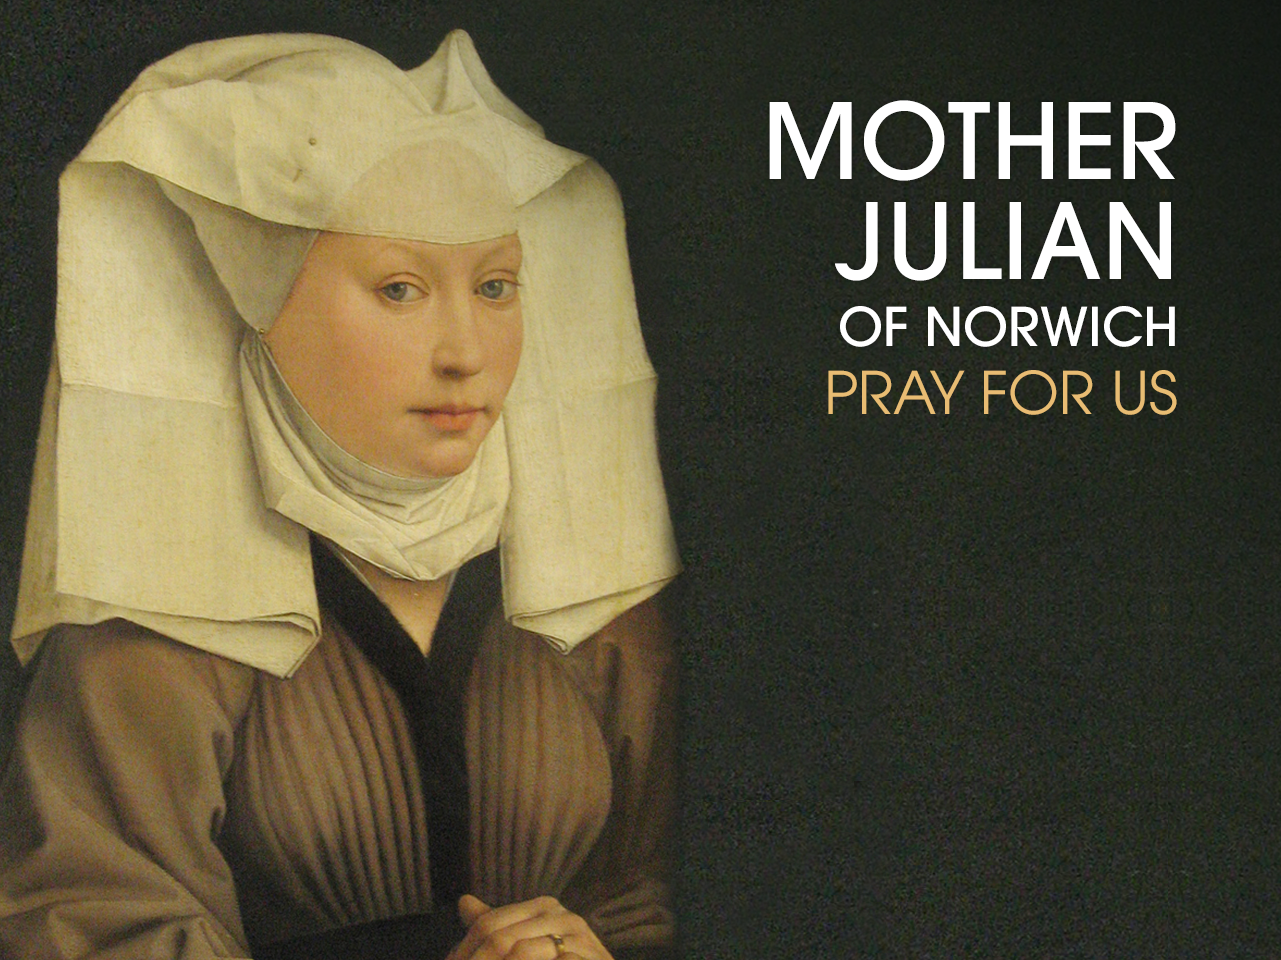 St. Juliana of Norwich